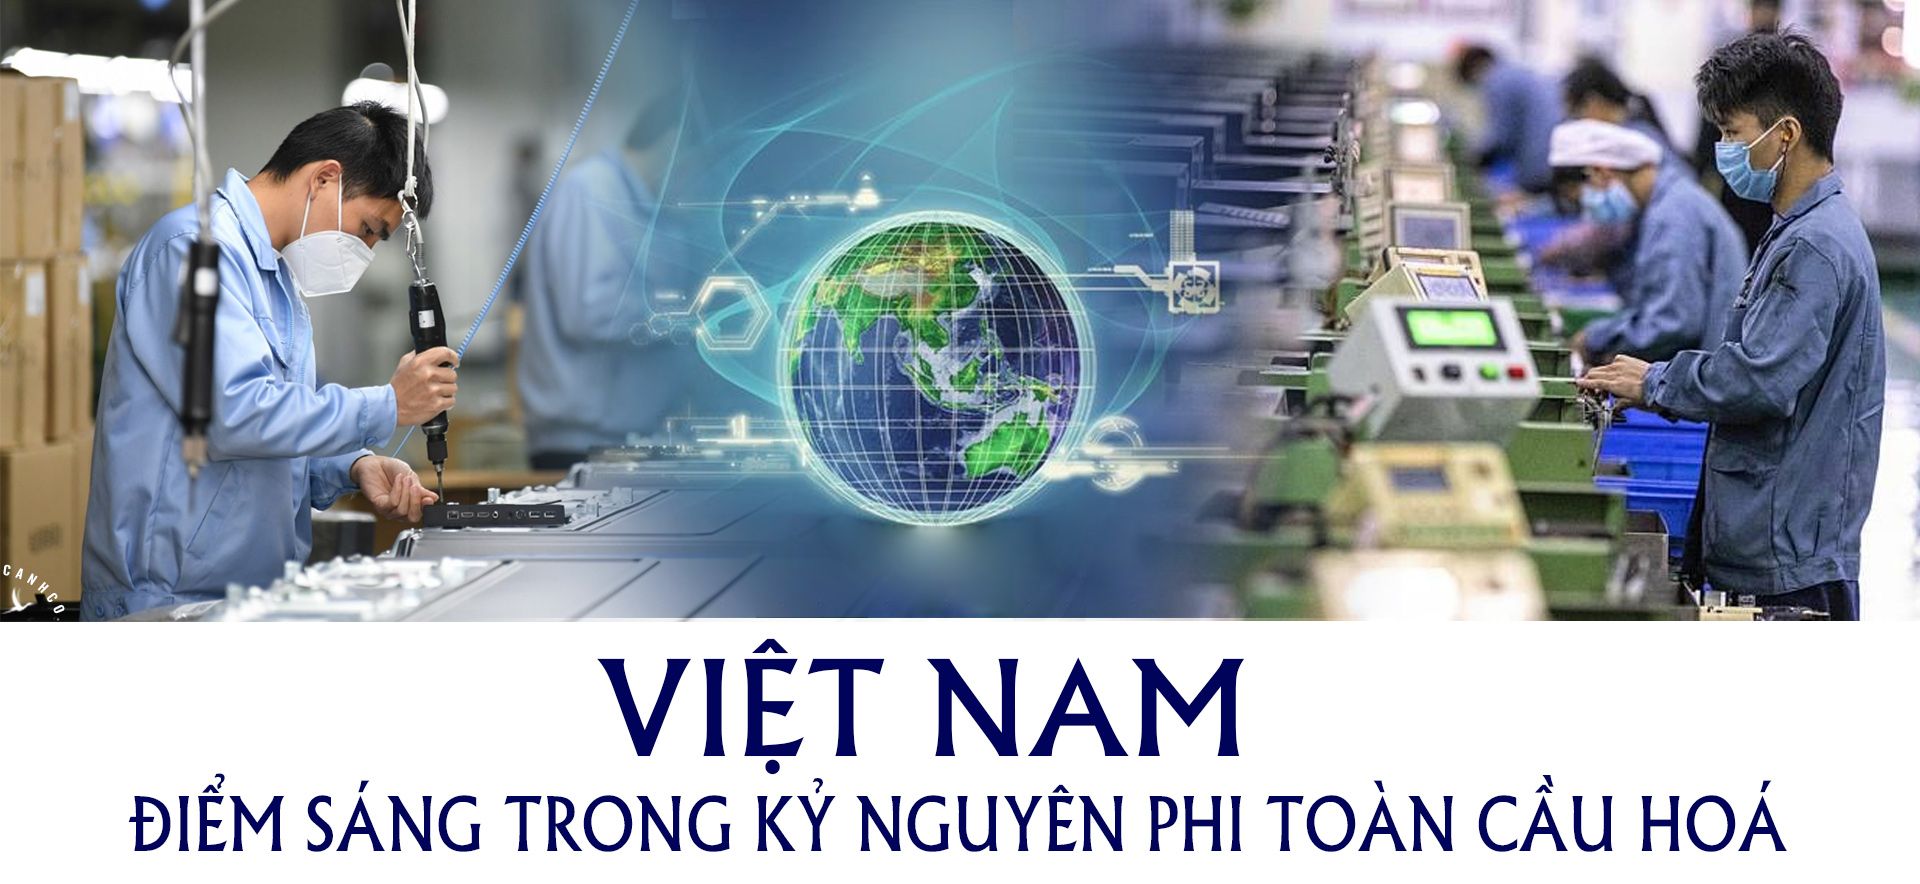 Việt Nam, điểm sáng trong kỷ nguyên phi toàn cầu hoá